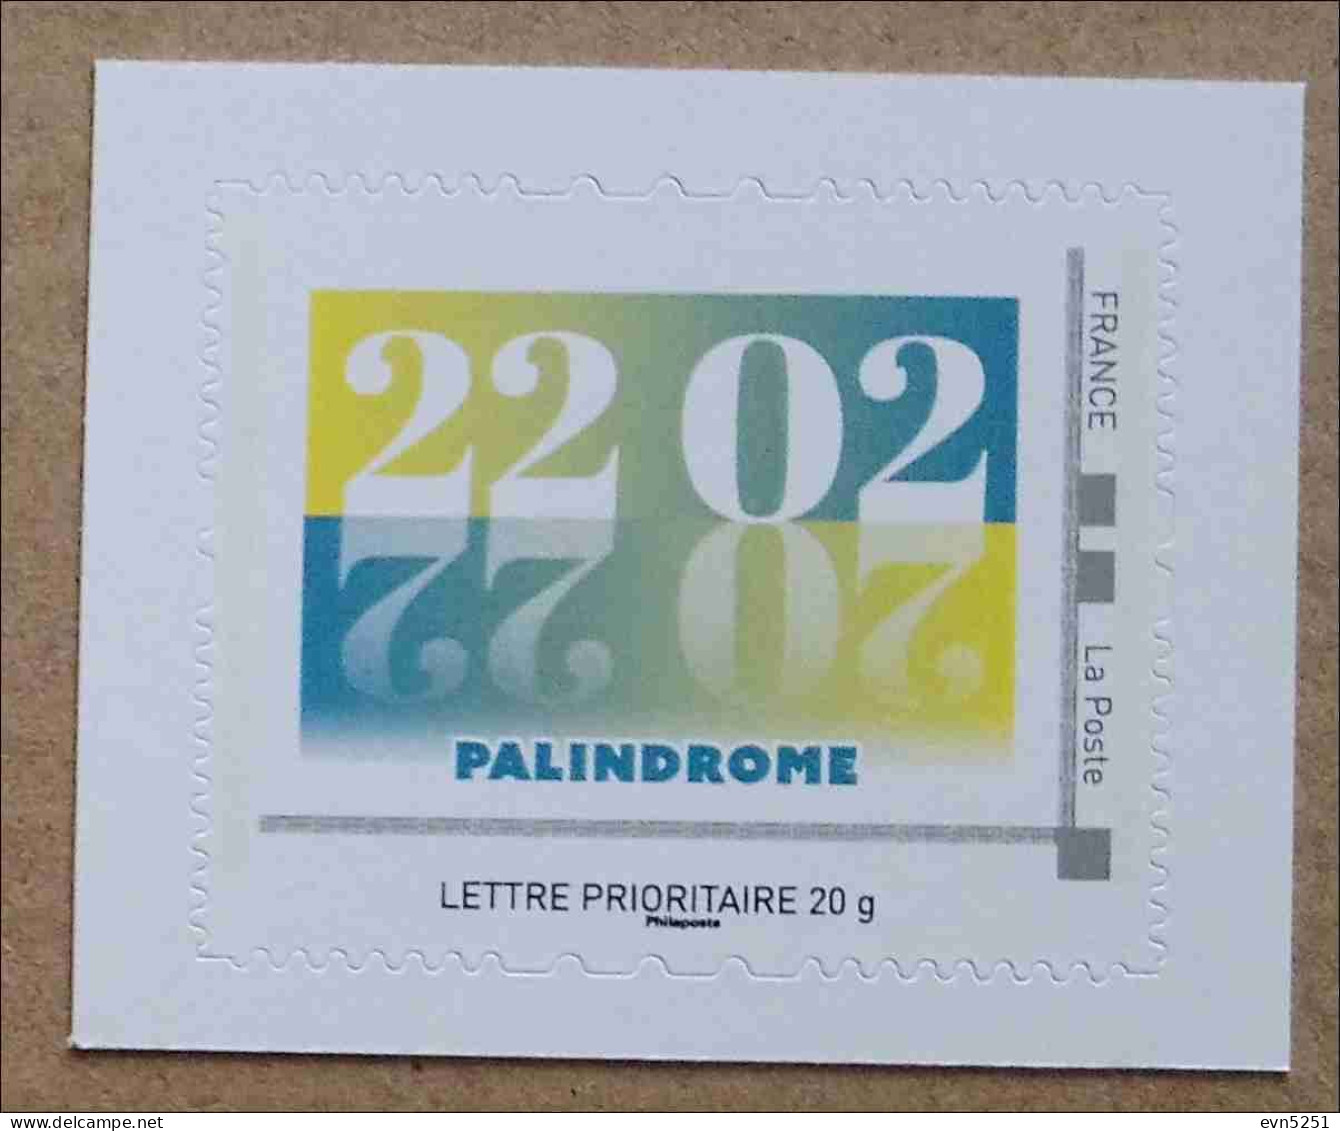 A4-88 : Palindrome - 22 02 2022 (autoadhésif / Autocollant) - Nuovi